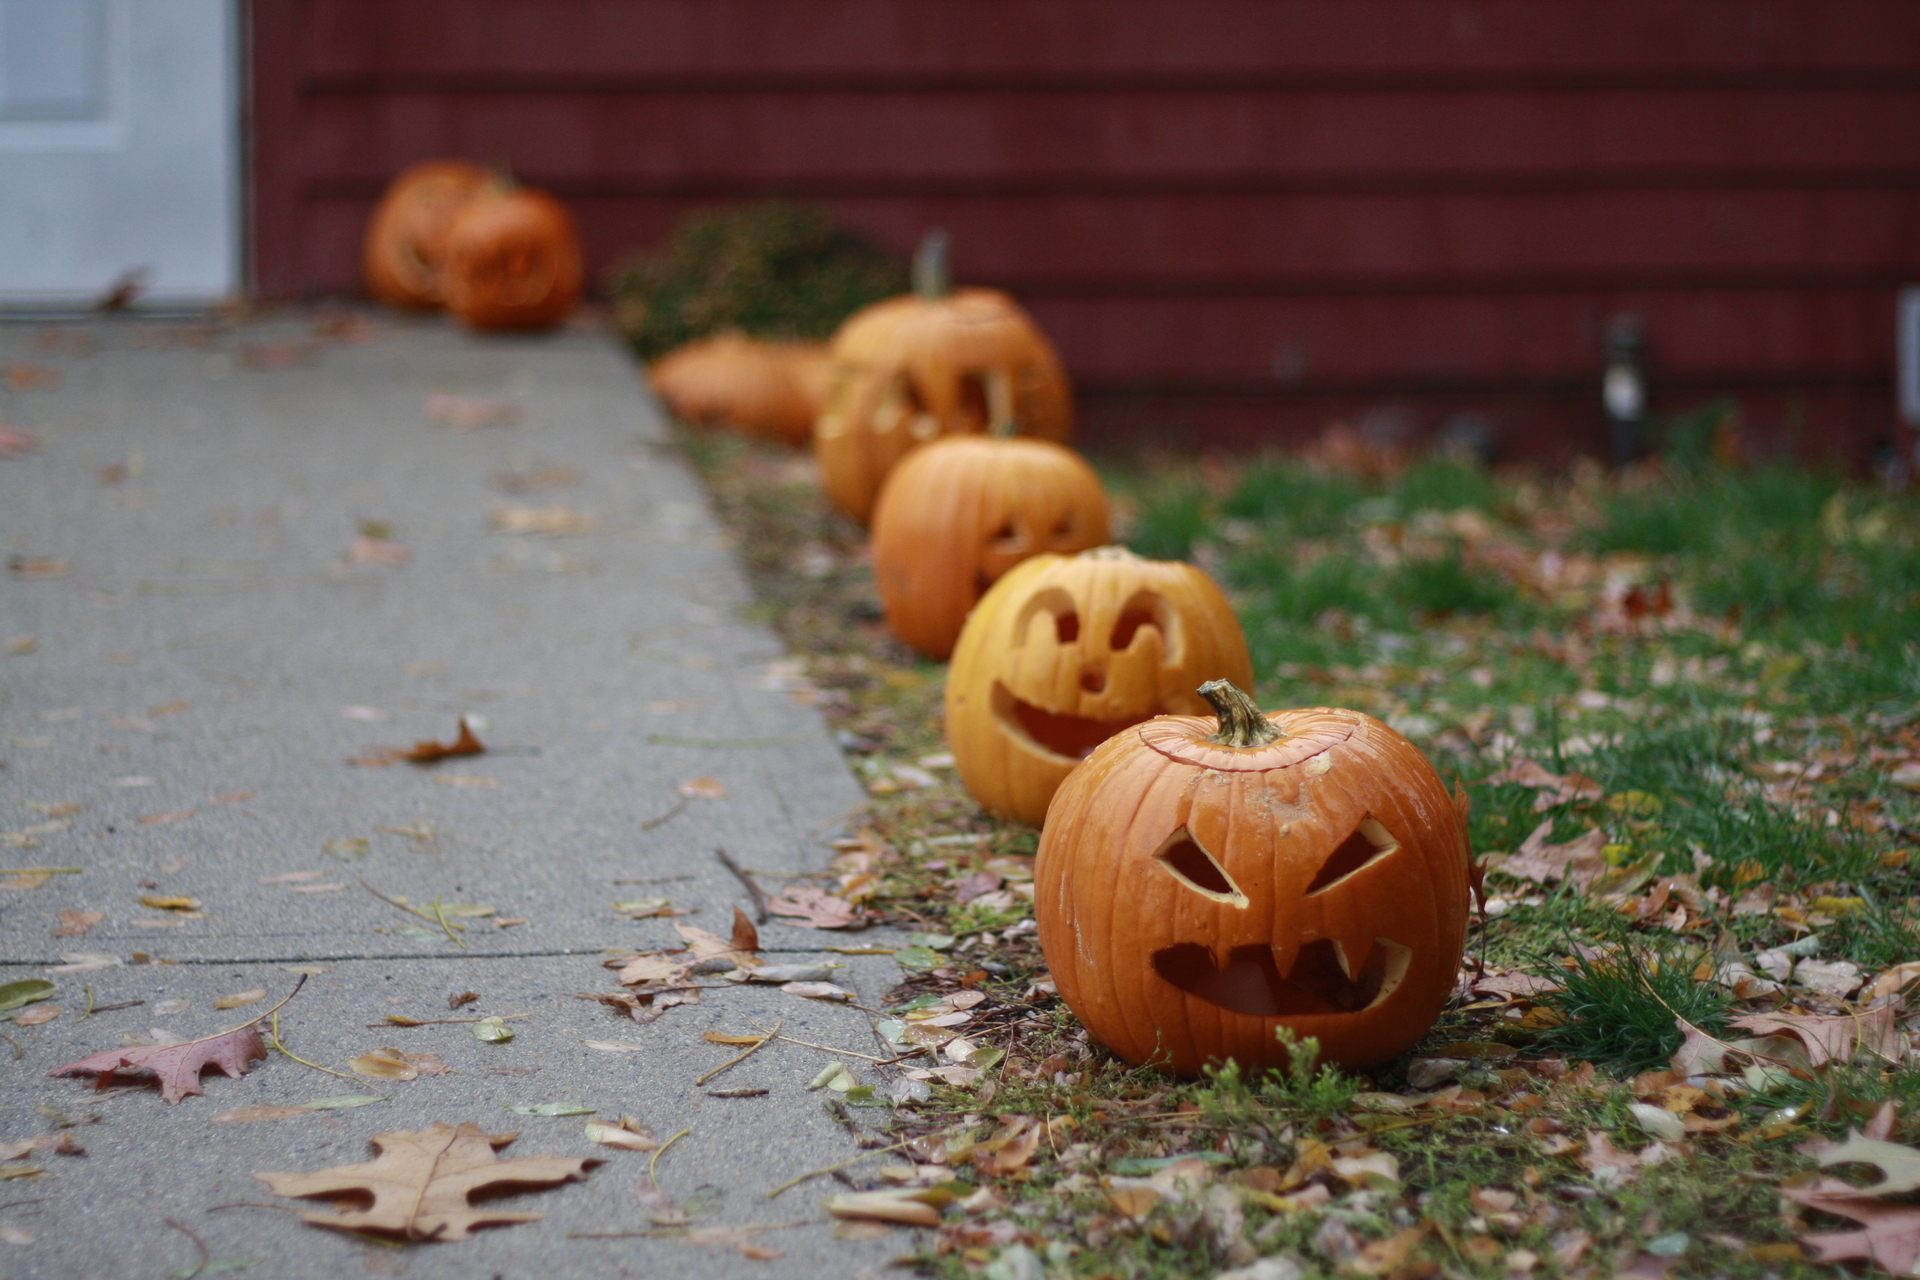 Carved pumpkins lined up next to sidewalk